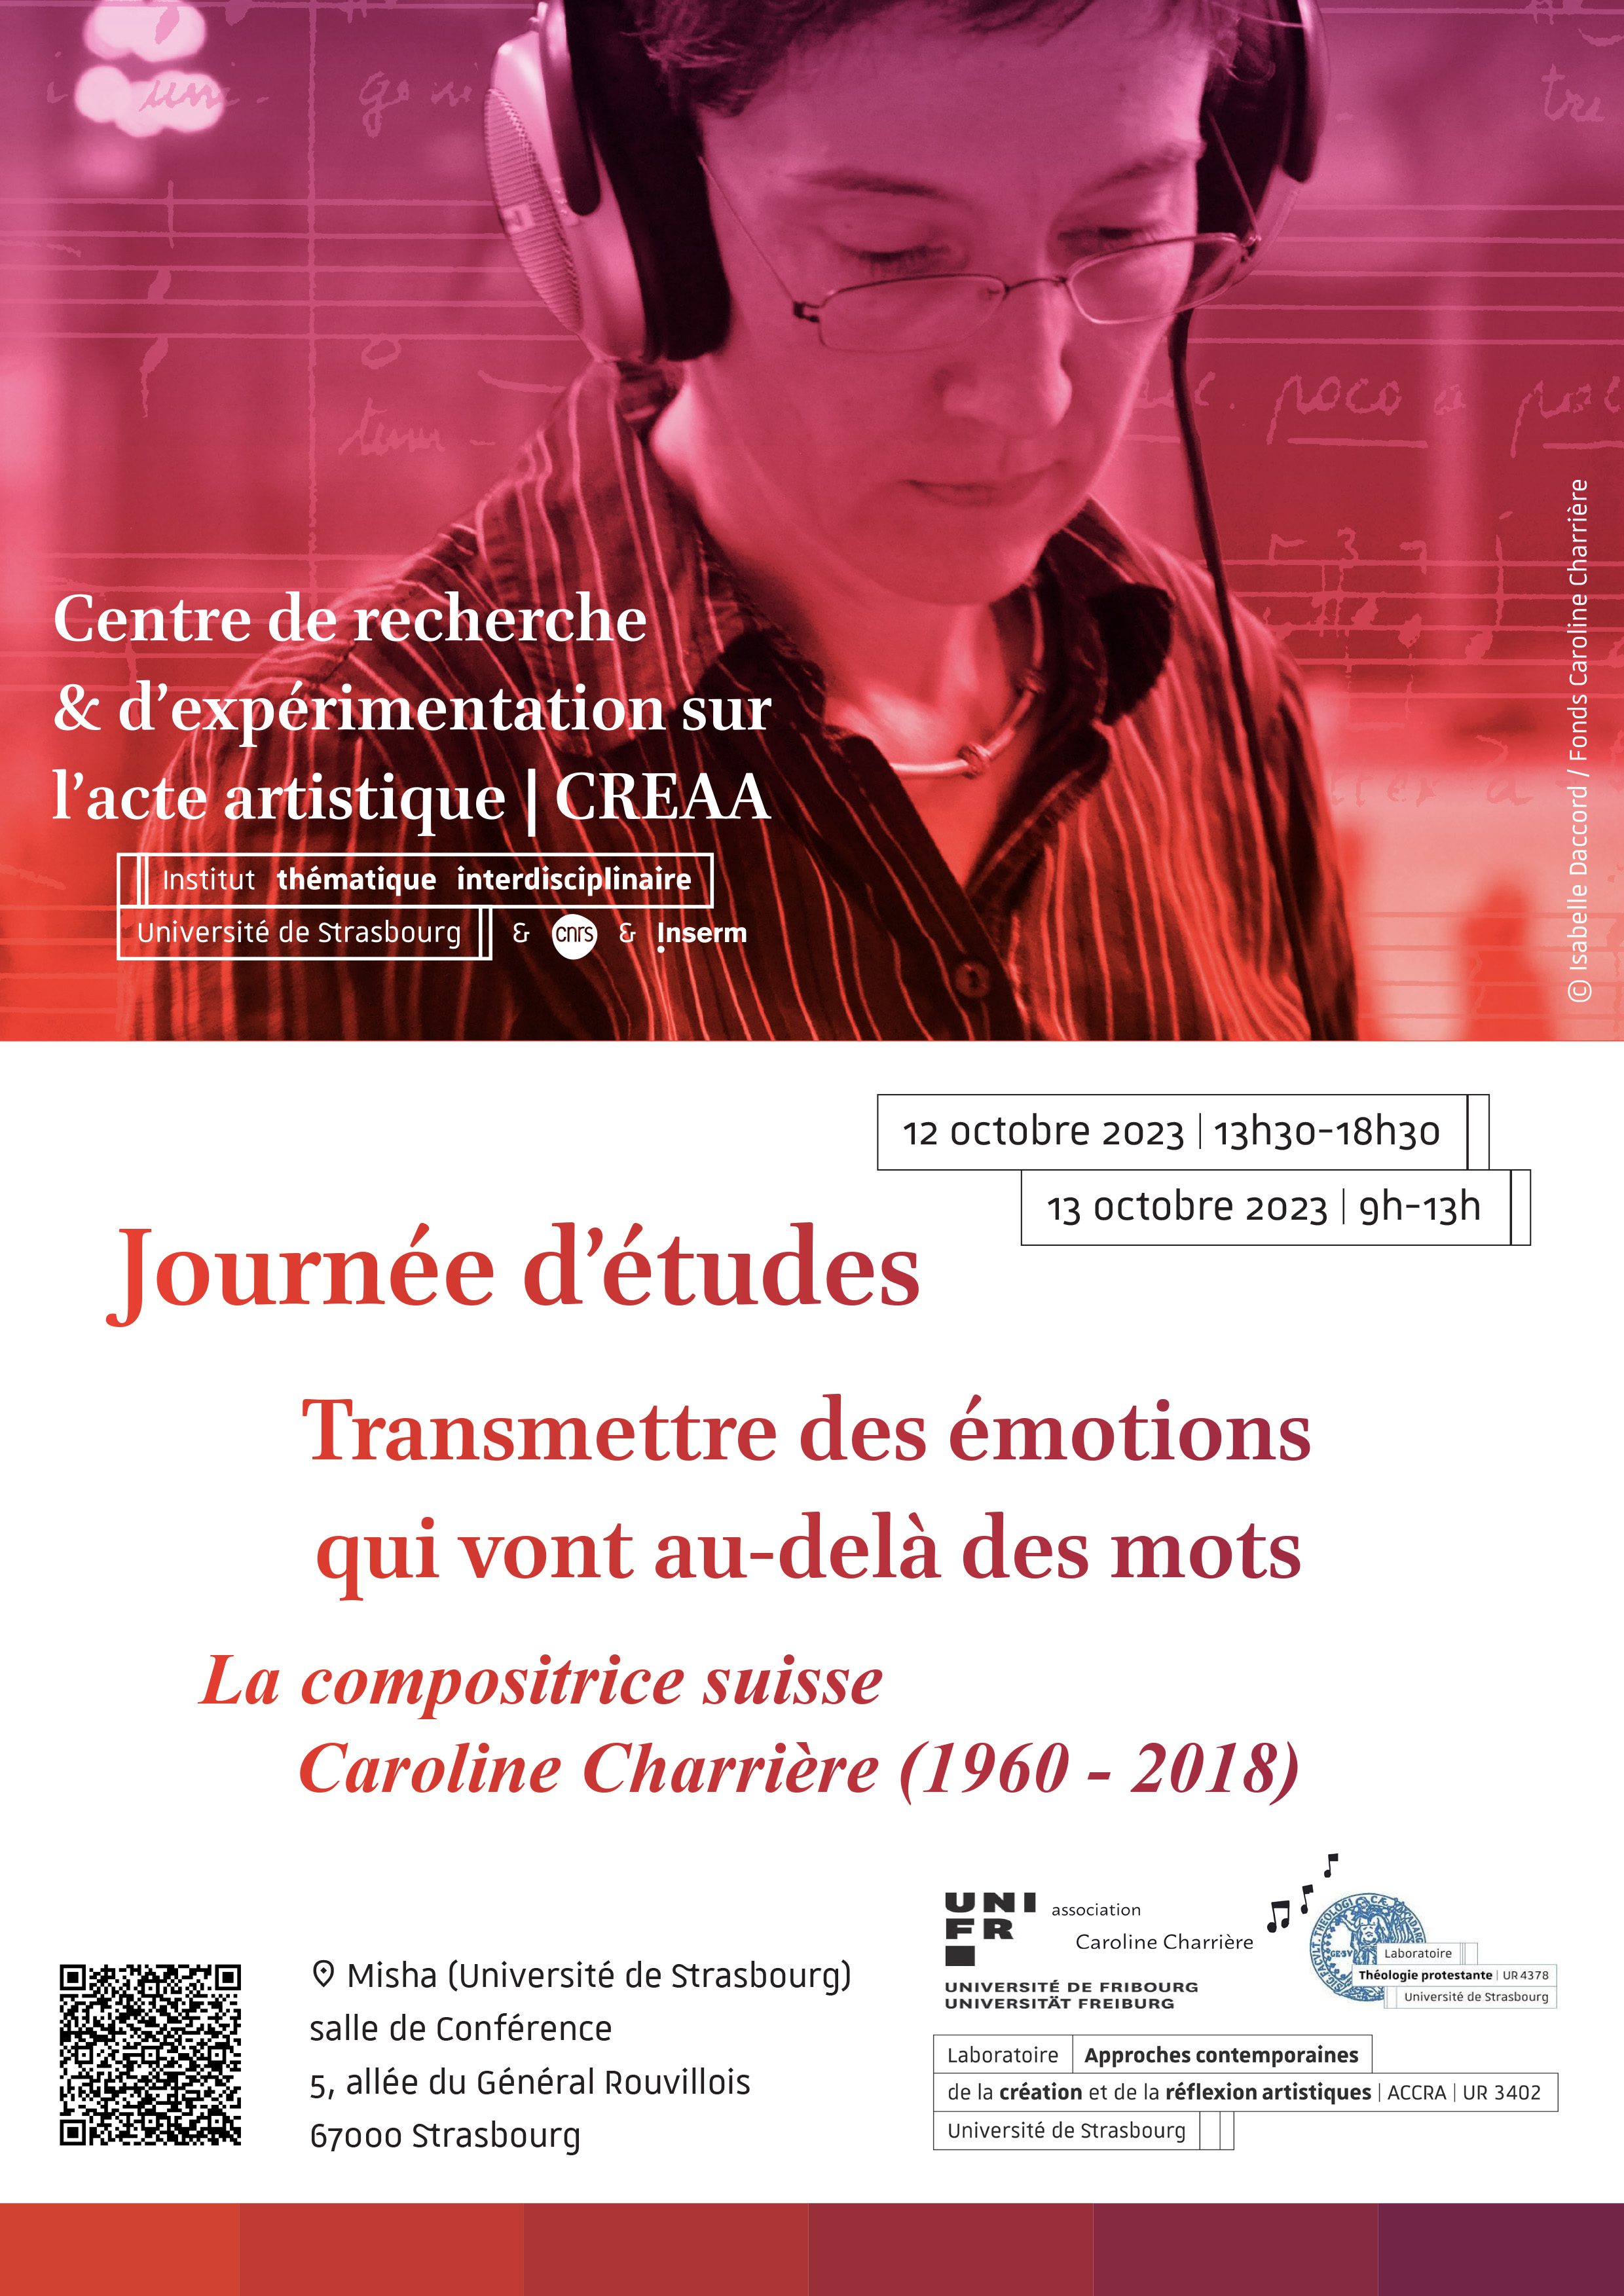 Journée d'étude : Caroline Charrière, 12-13 octobre à Strasbourg